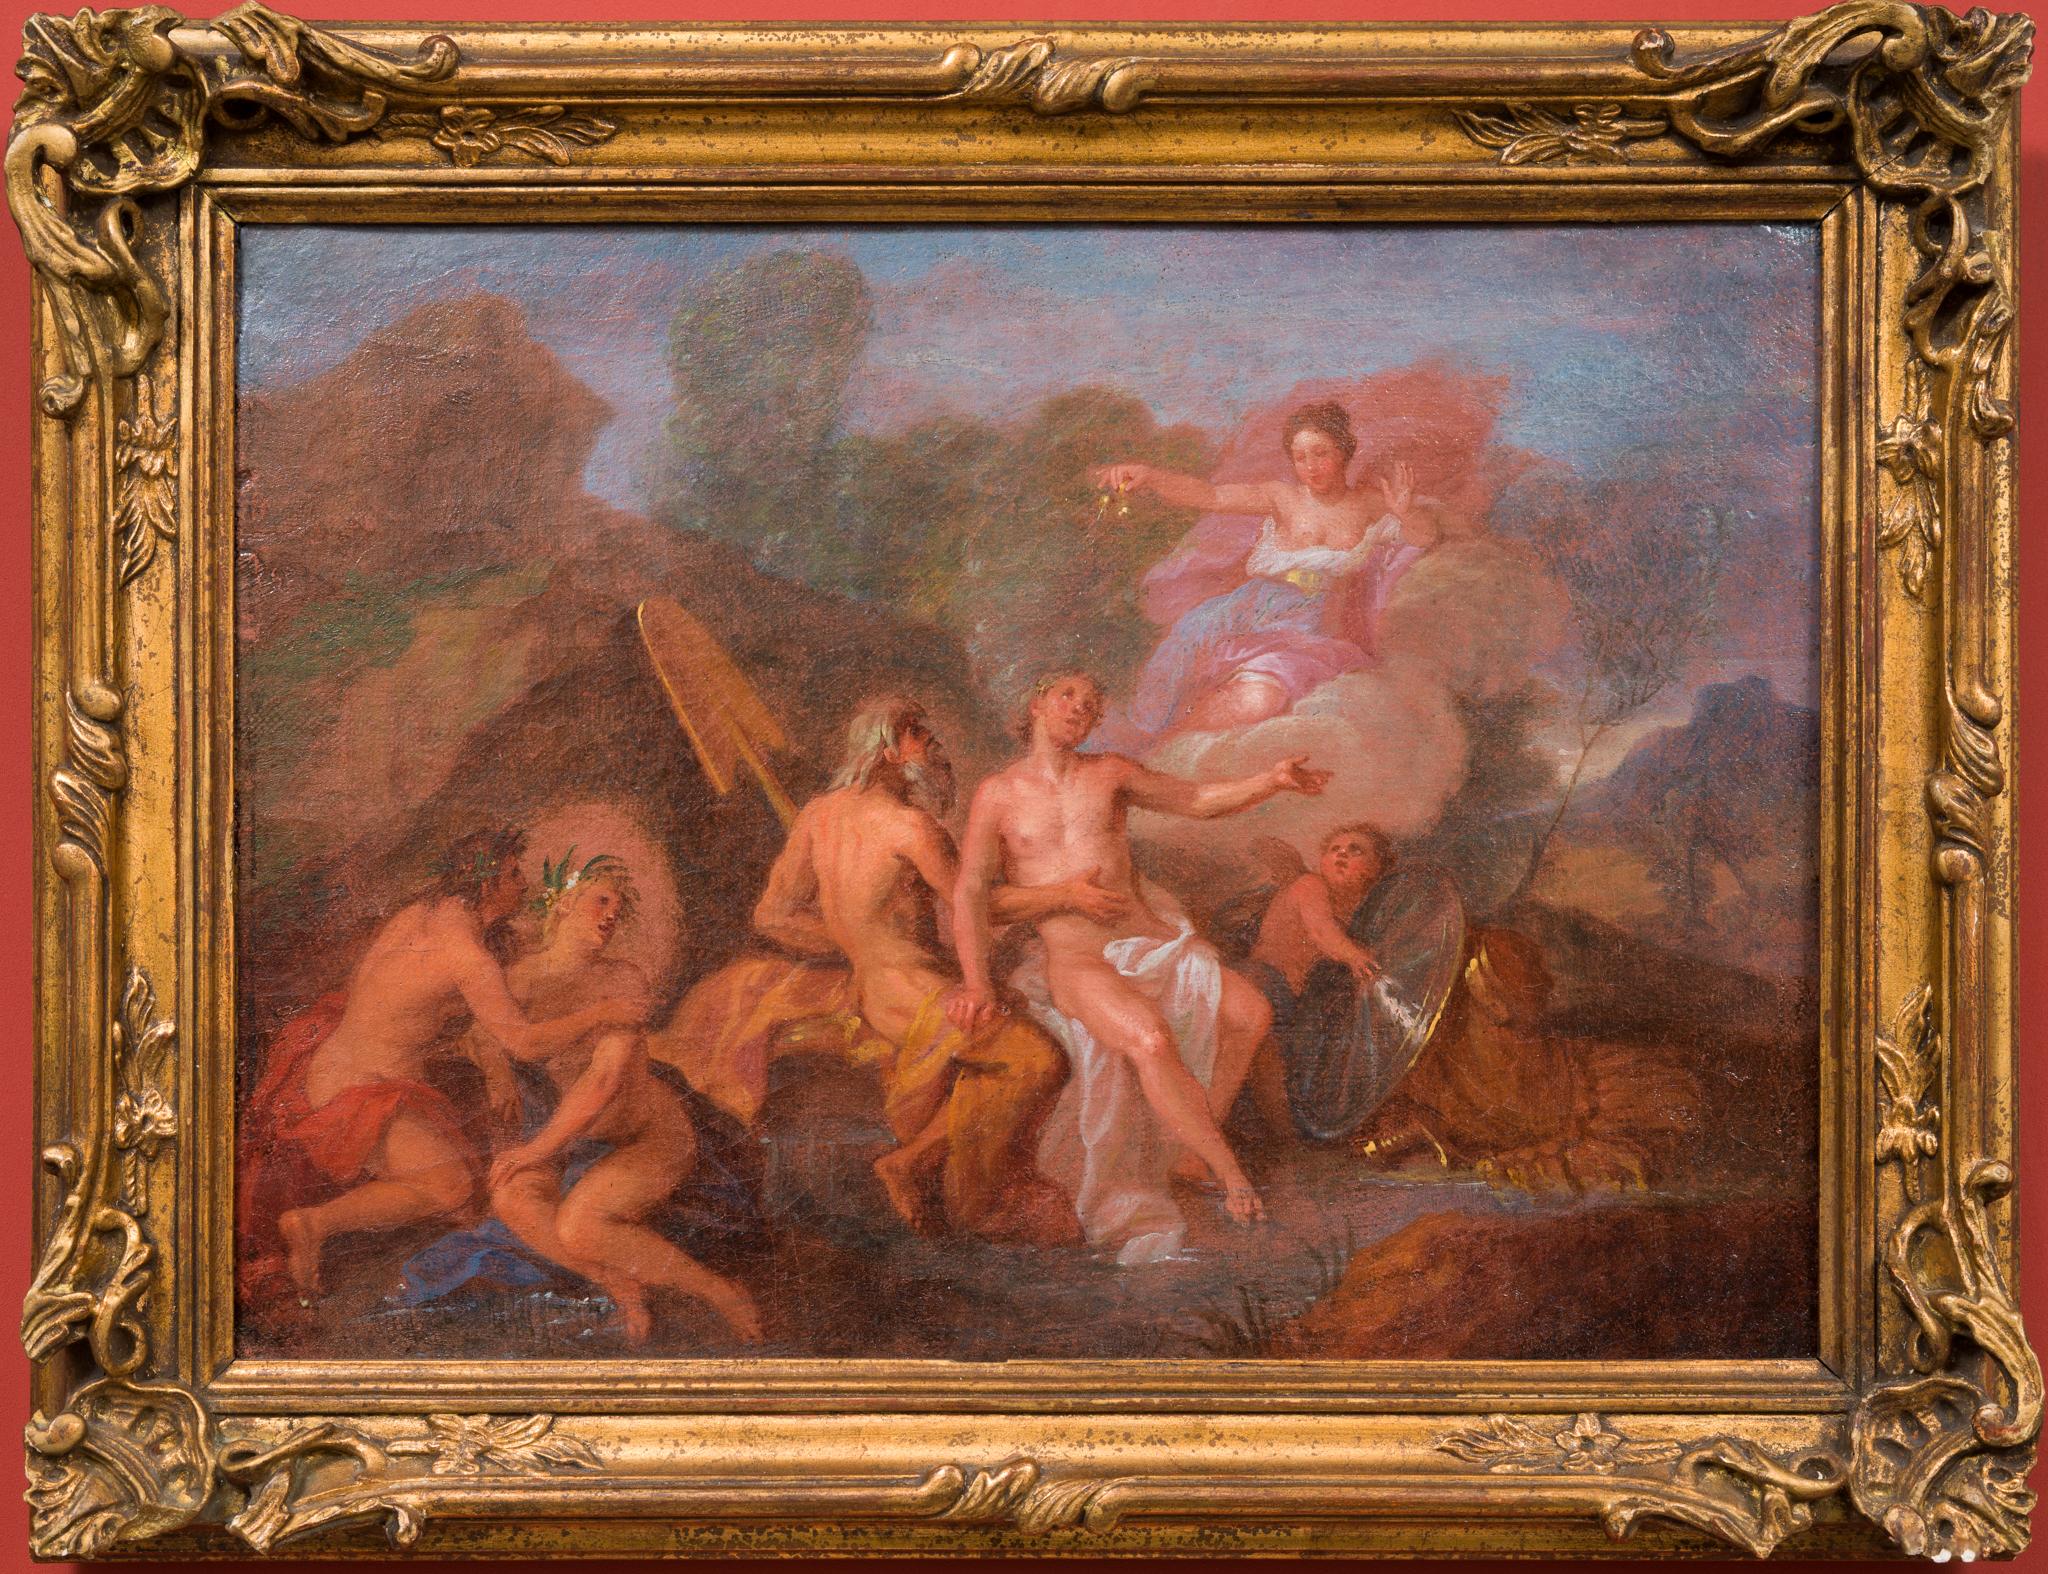 Dieses exquisite Gemälde, das dem Umkreis von Charles Antoine Coypel zugeschrieben wird, zeigt eine mythologische Szene. Obwohl der Künstler nicht bekannt ist, erinnert das Werk deutlich an den Stil des frühen 18. Jahrhunderts, mit weichen,